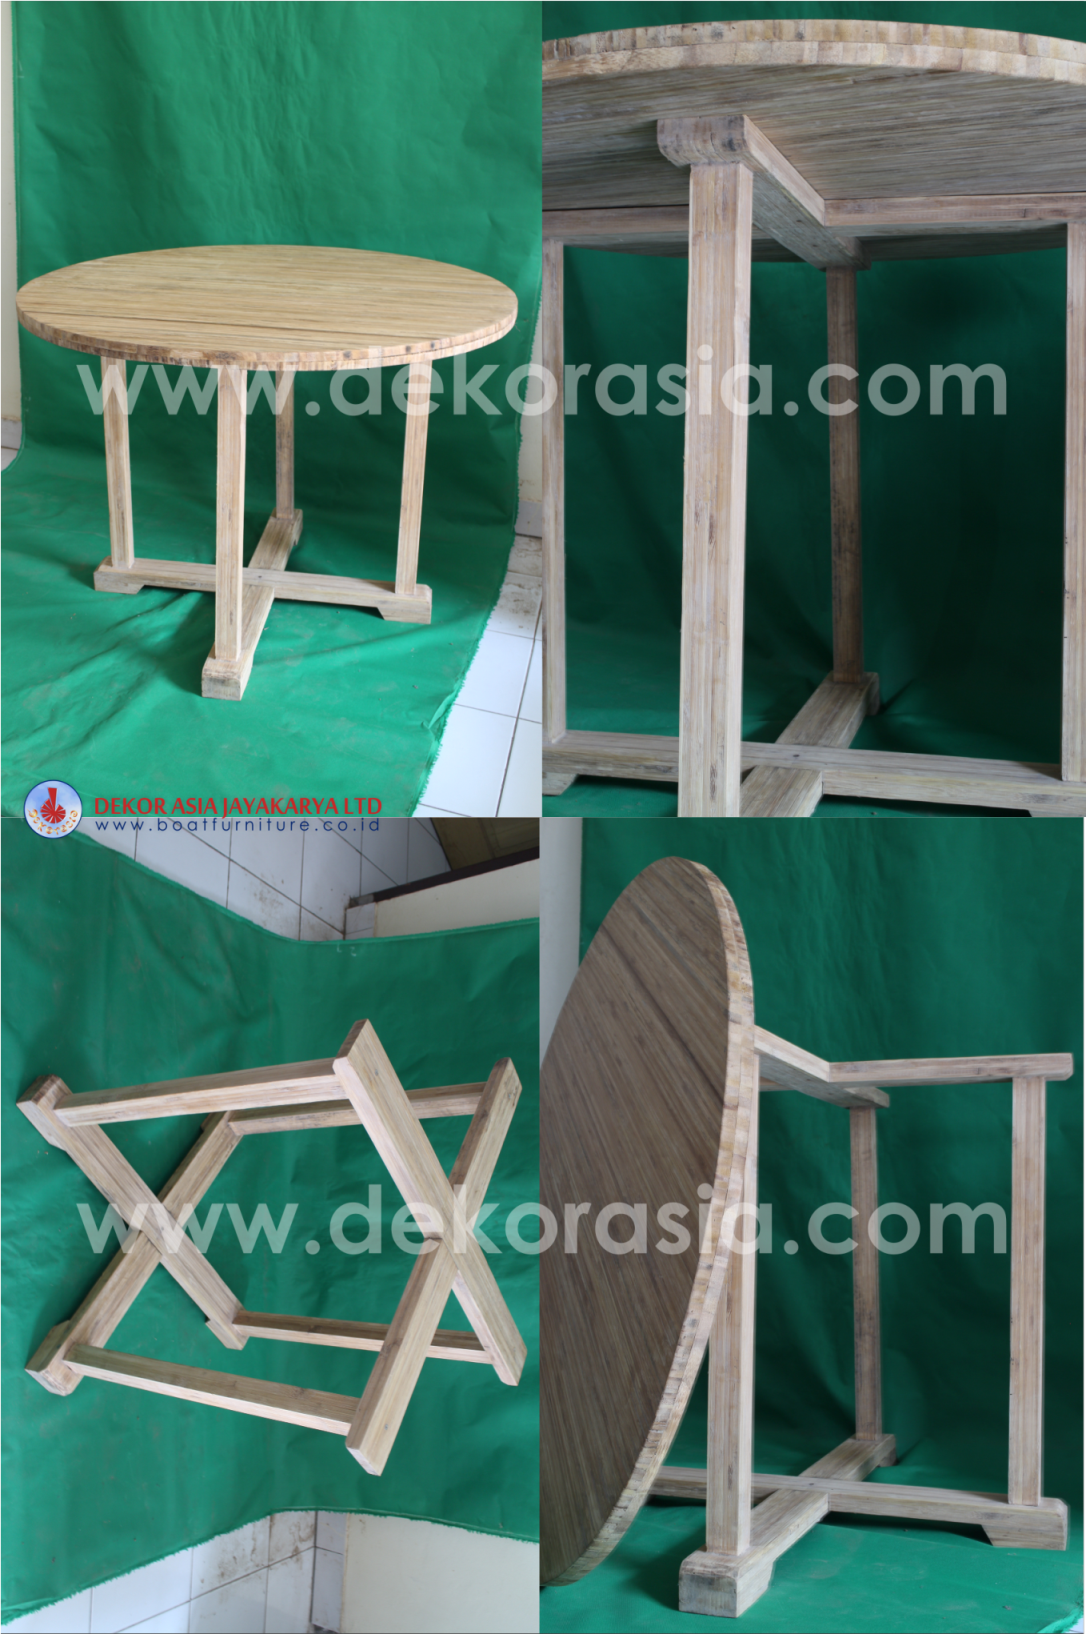 Bamboo Table Design Ideas